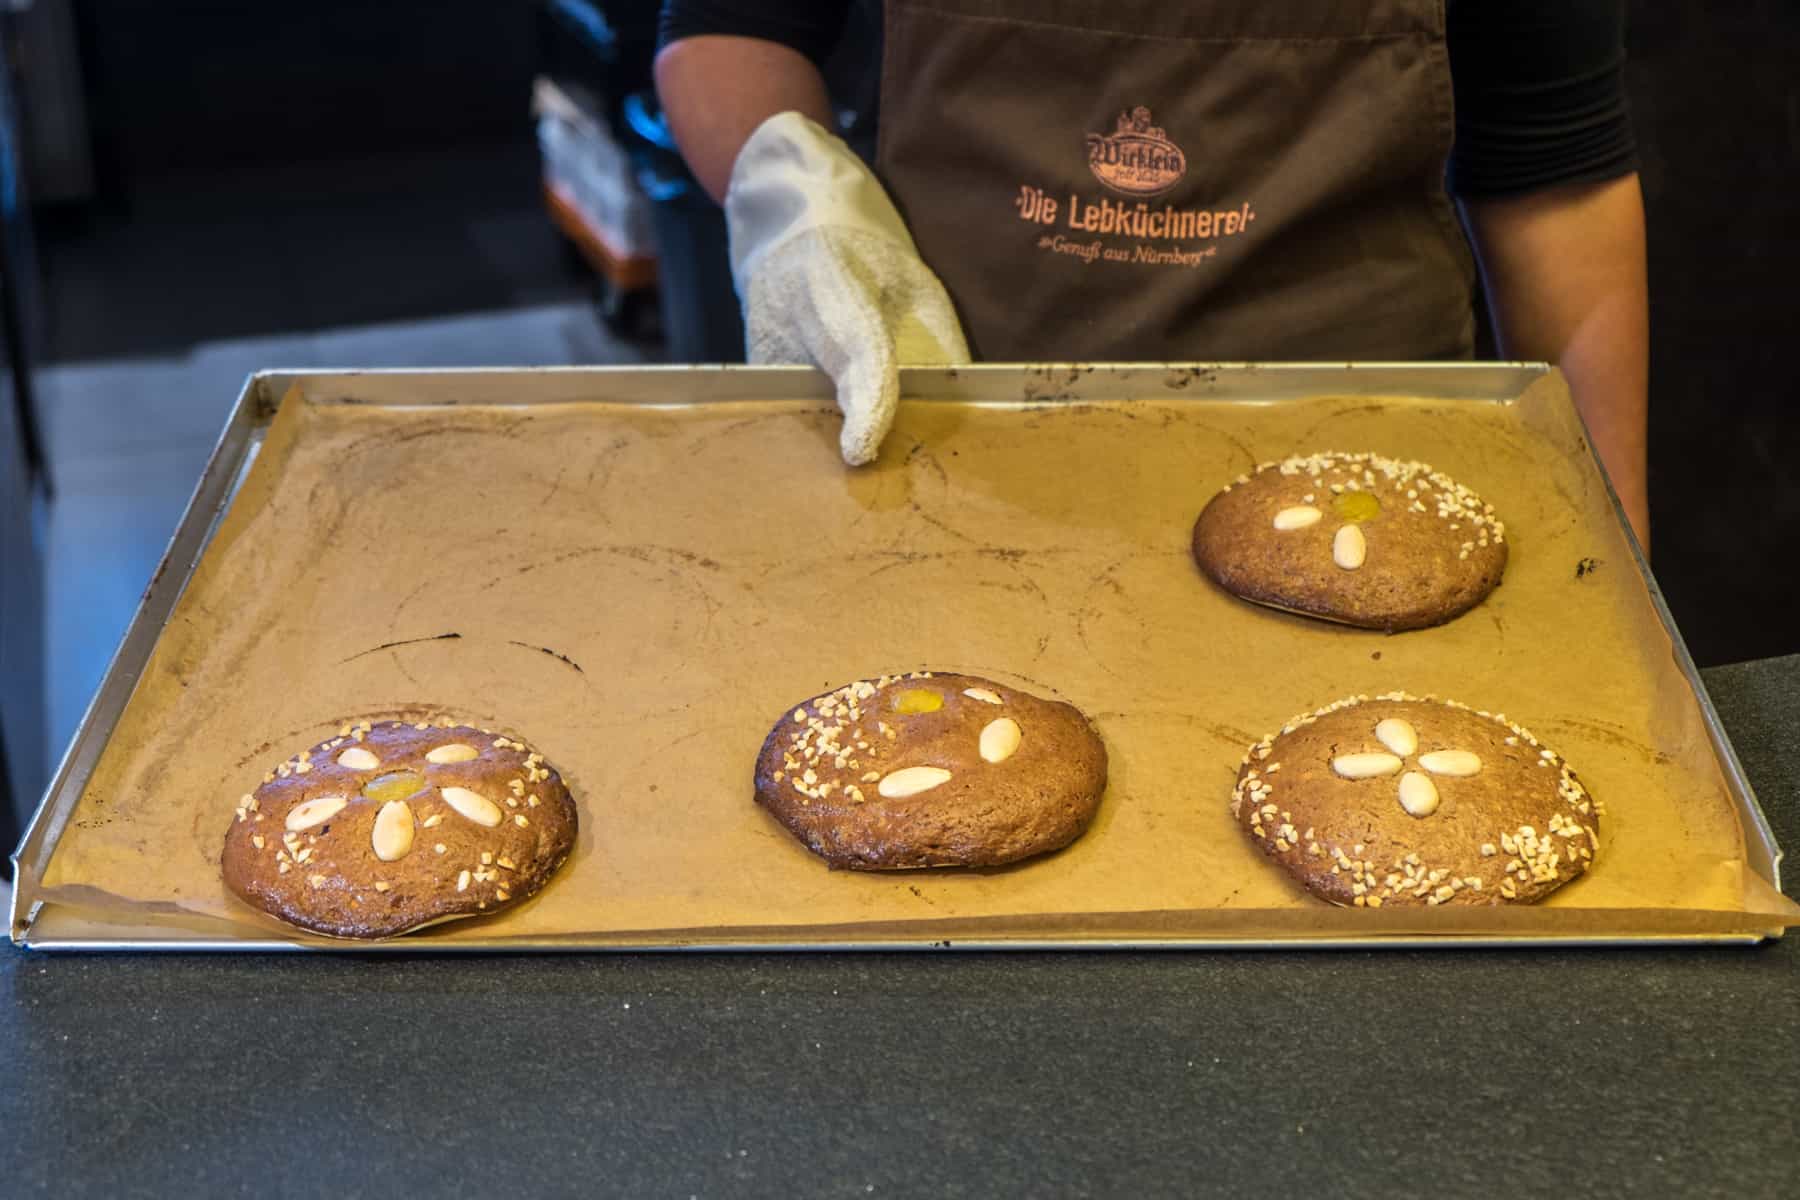 Cuatro creaciones de pan de jengibre Lebkuchen horneados de Nuremberg hechas durante una clase de pan de jengibre para turistas